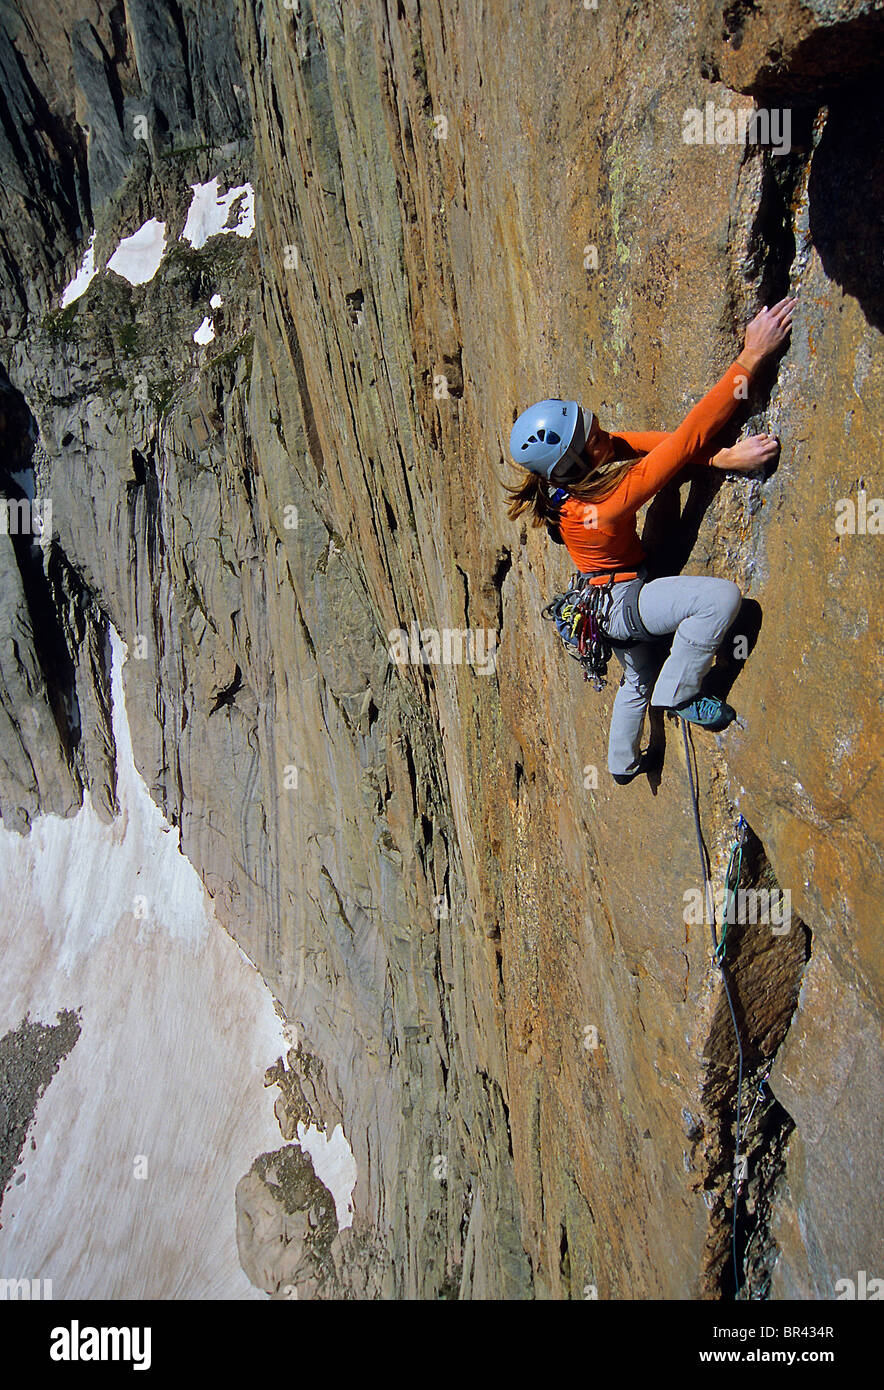 A woman rock climbing in Rocky Mountain National Park, Colorado. Stock Photo